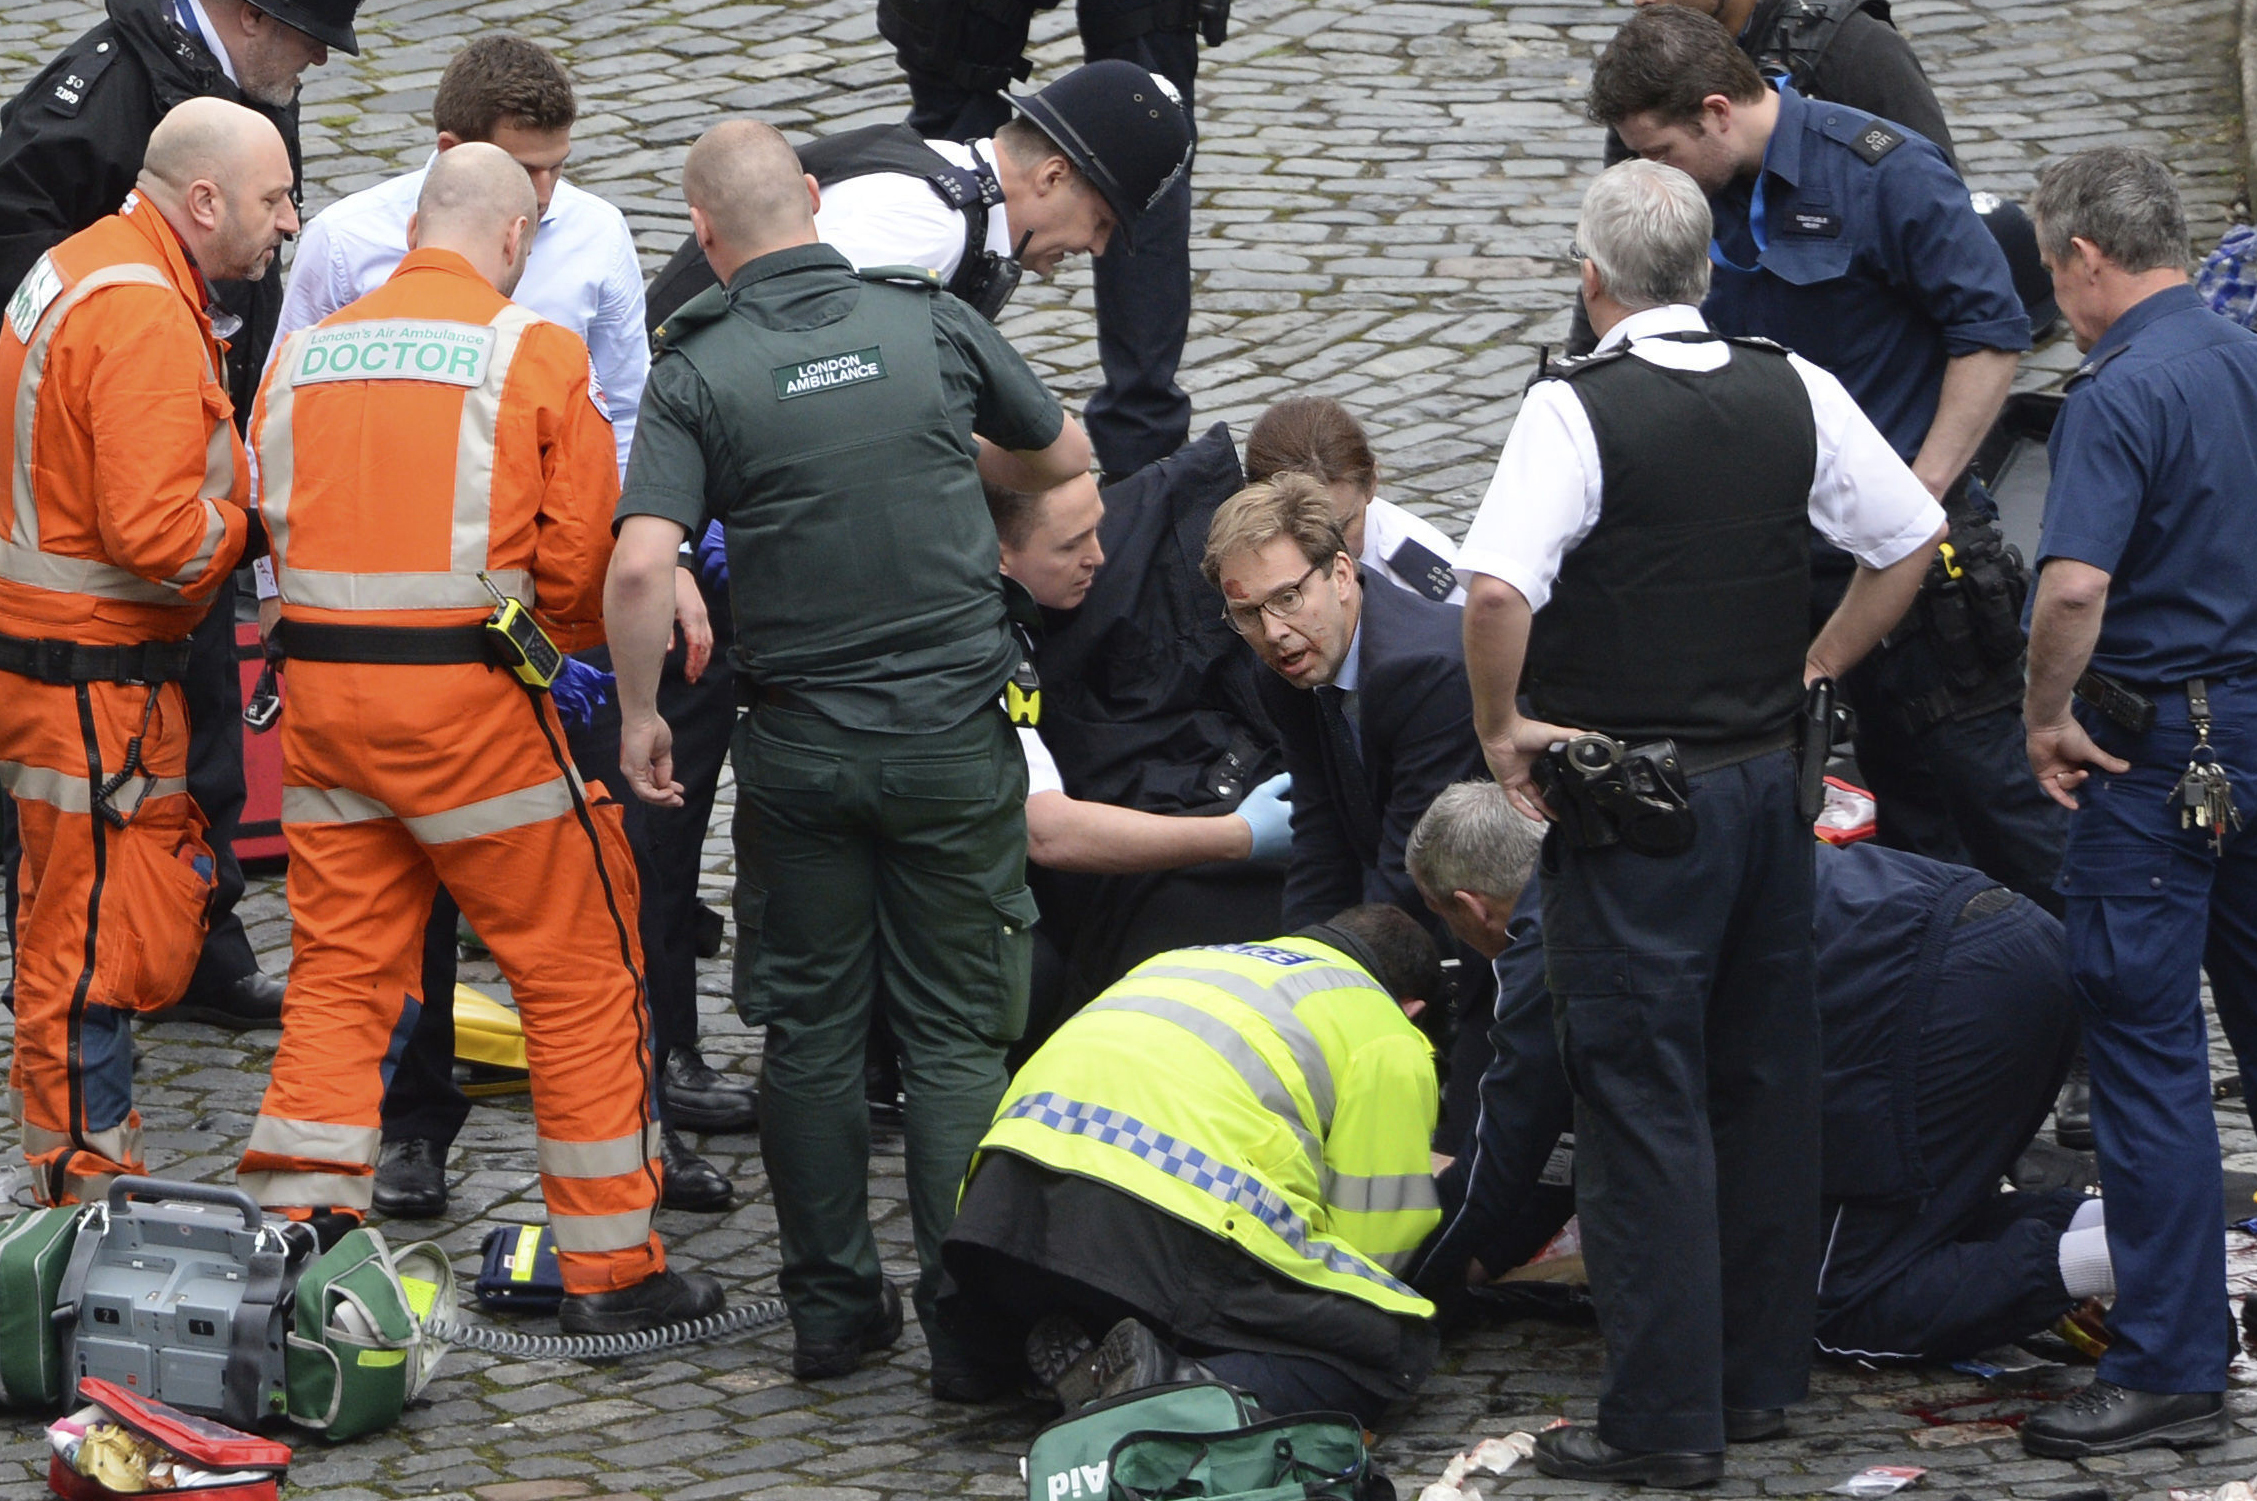 Legislador se convierte en "héroe" durante el atentado en Londres